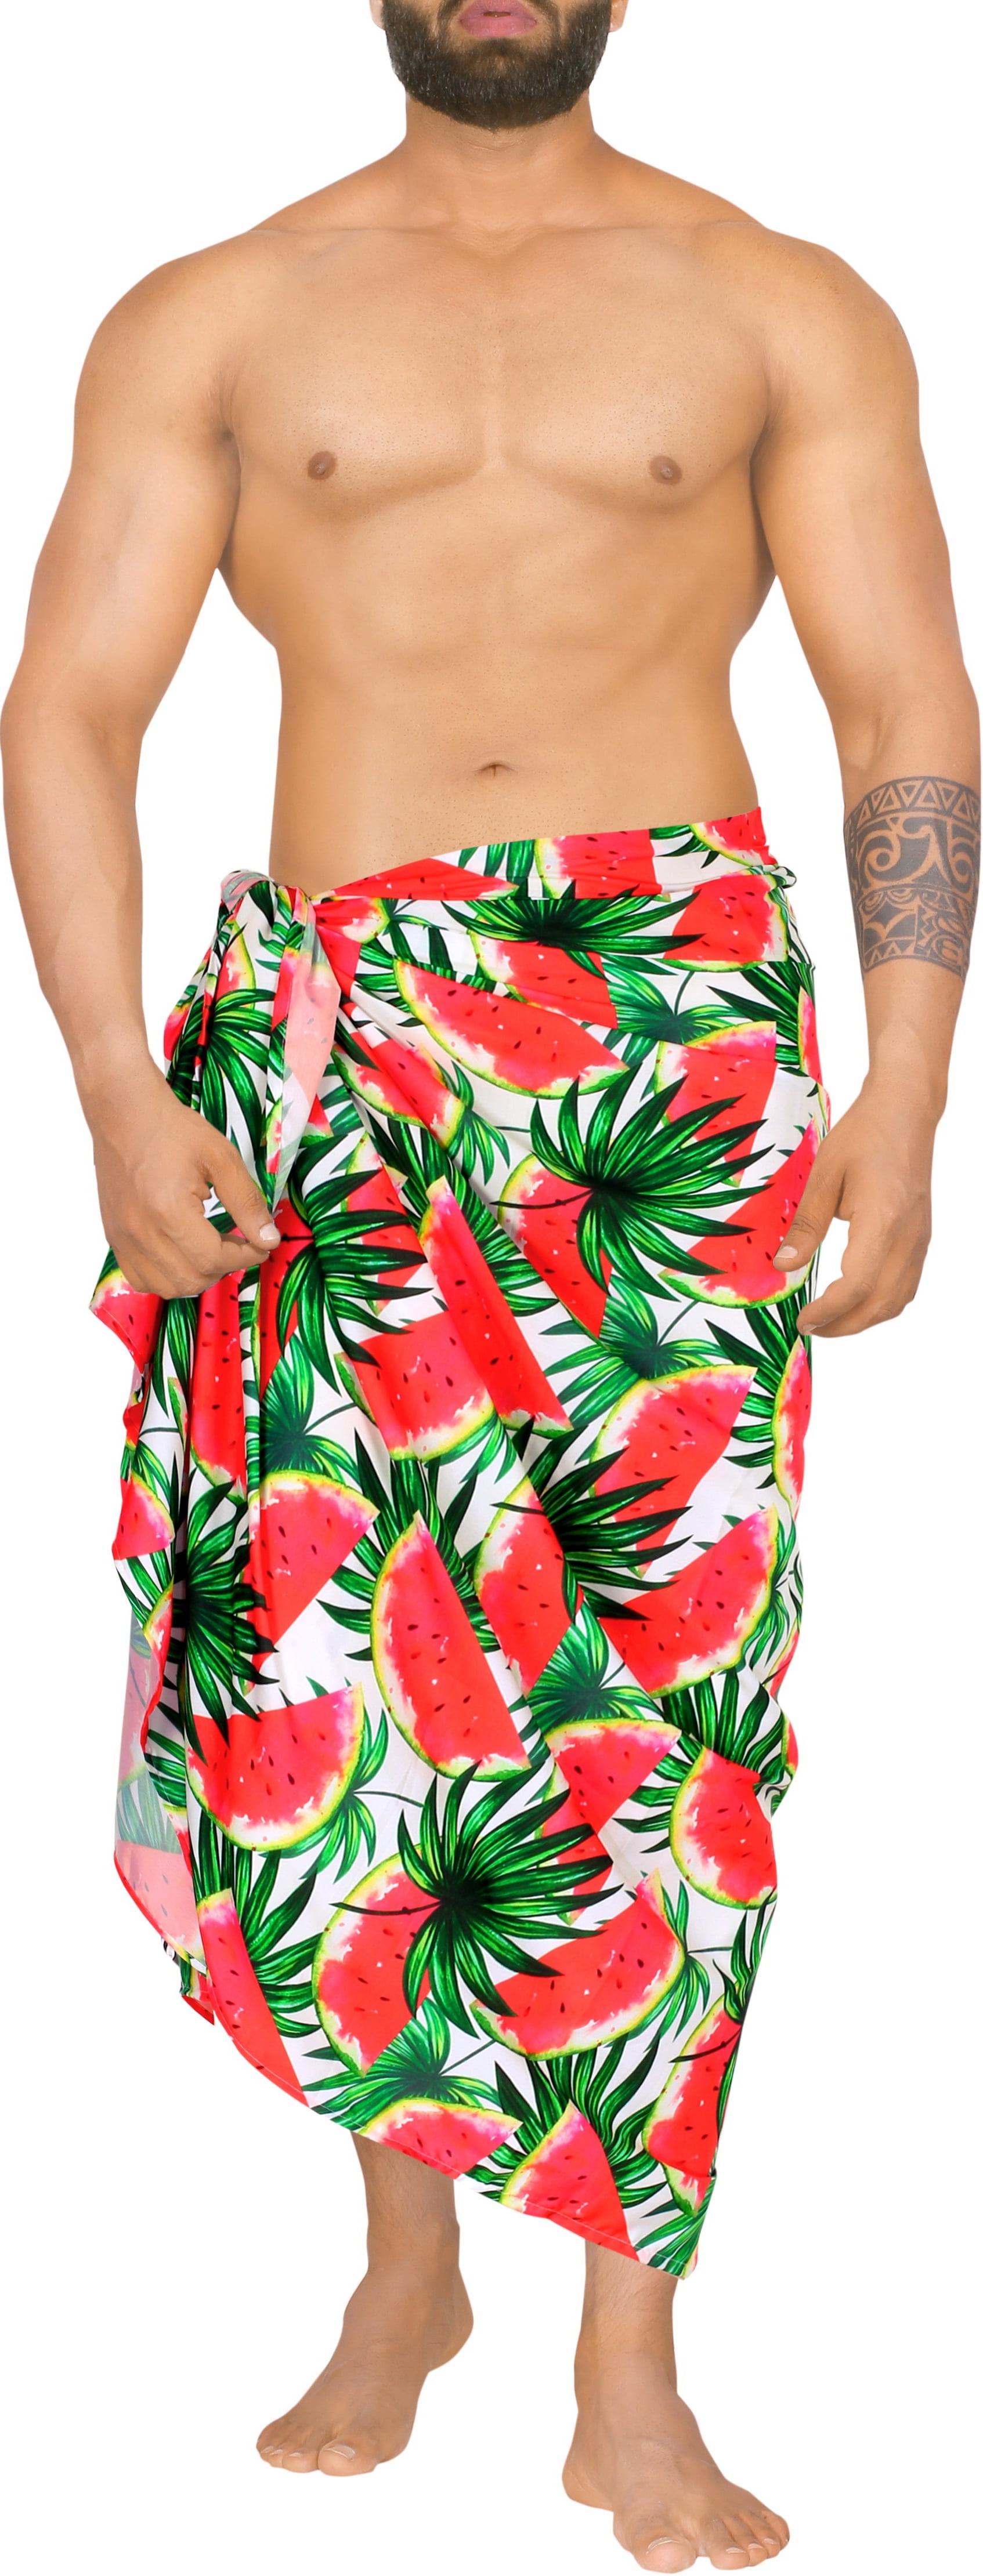 lanthaan Slecht bijvoorbeeld LA LEELA Men's Sarong Standard Beachwear Pareo Wrap One Size Red, Leaves -  Walmart.com